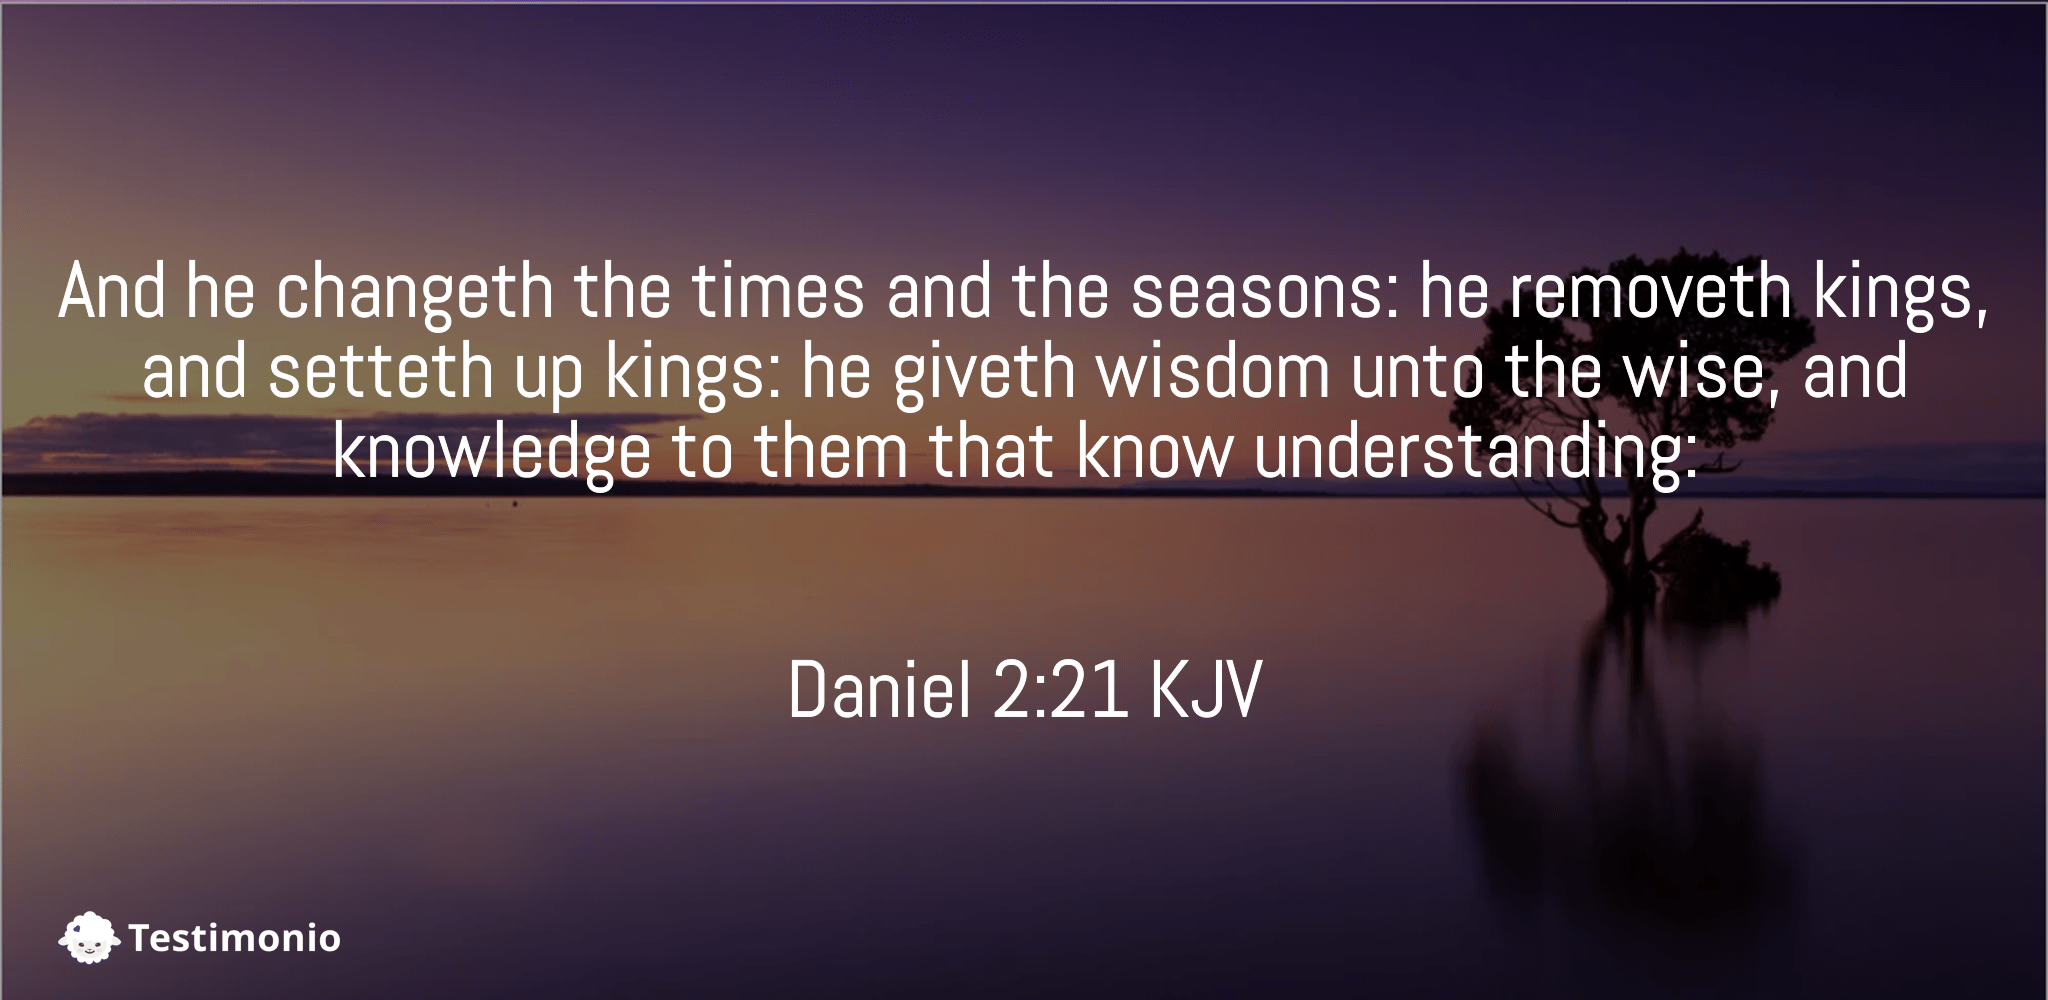 Daniel 2:21